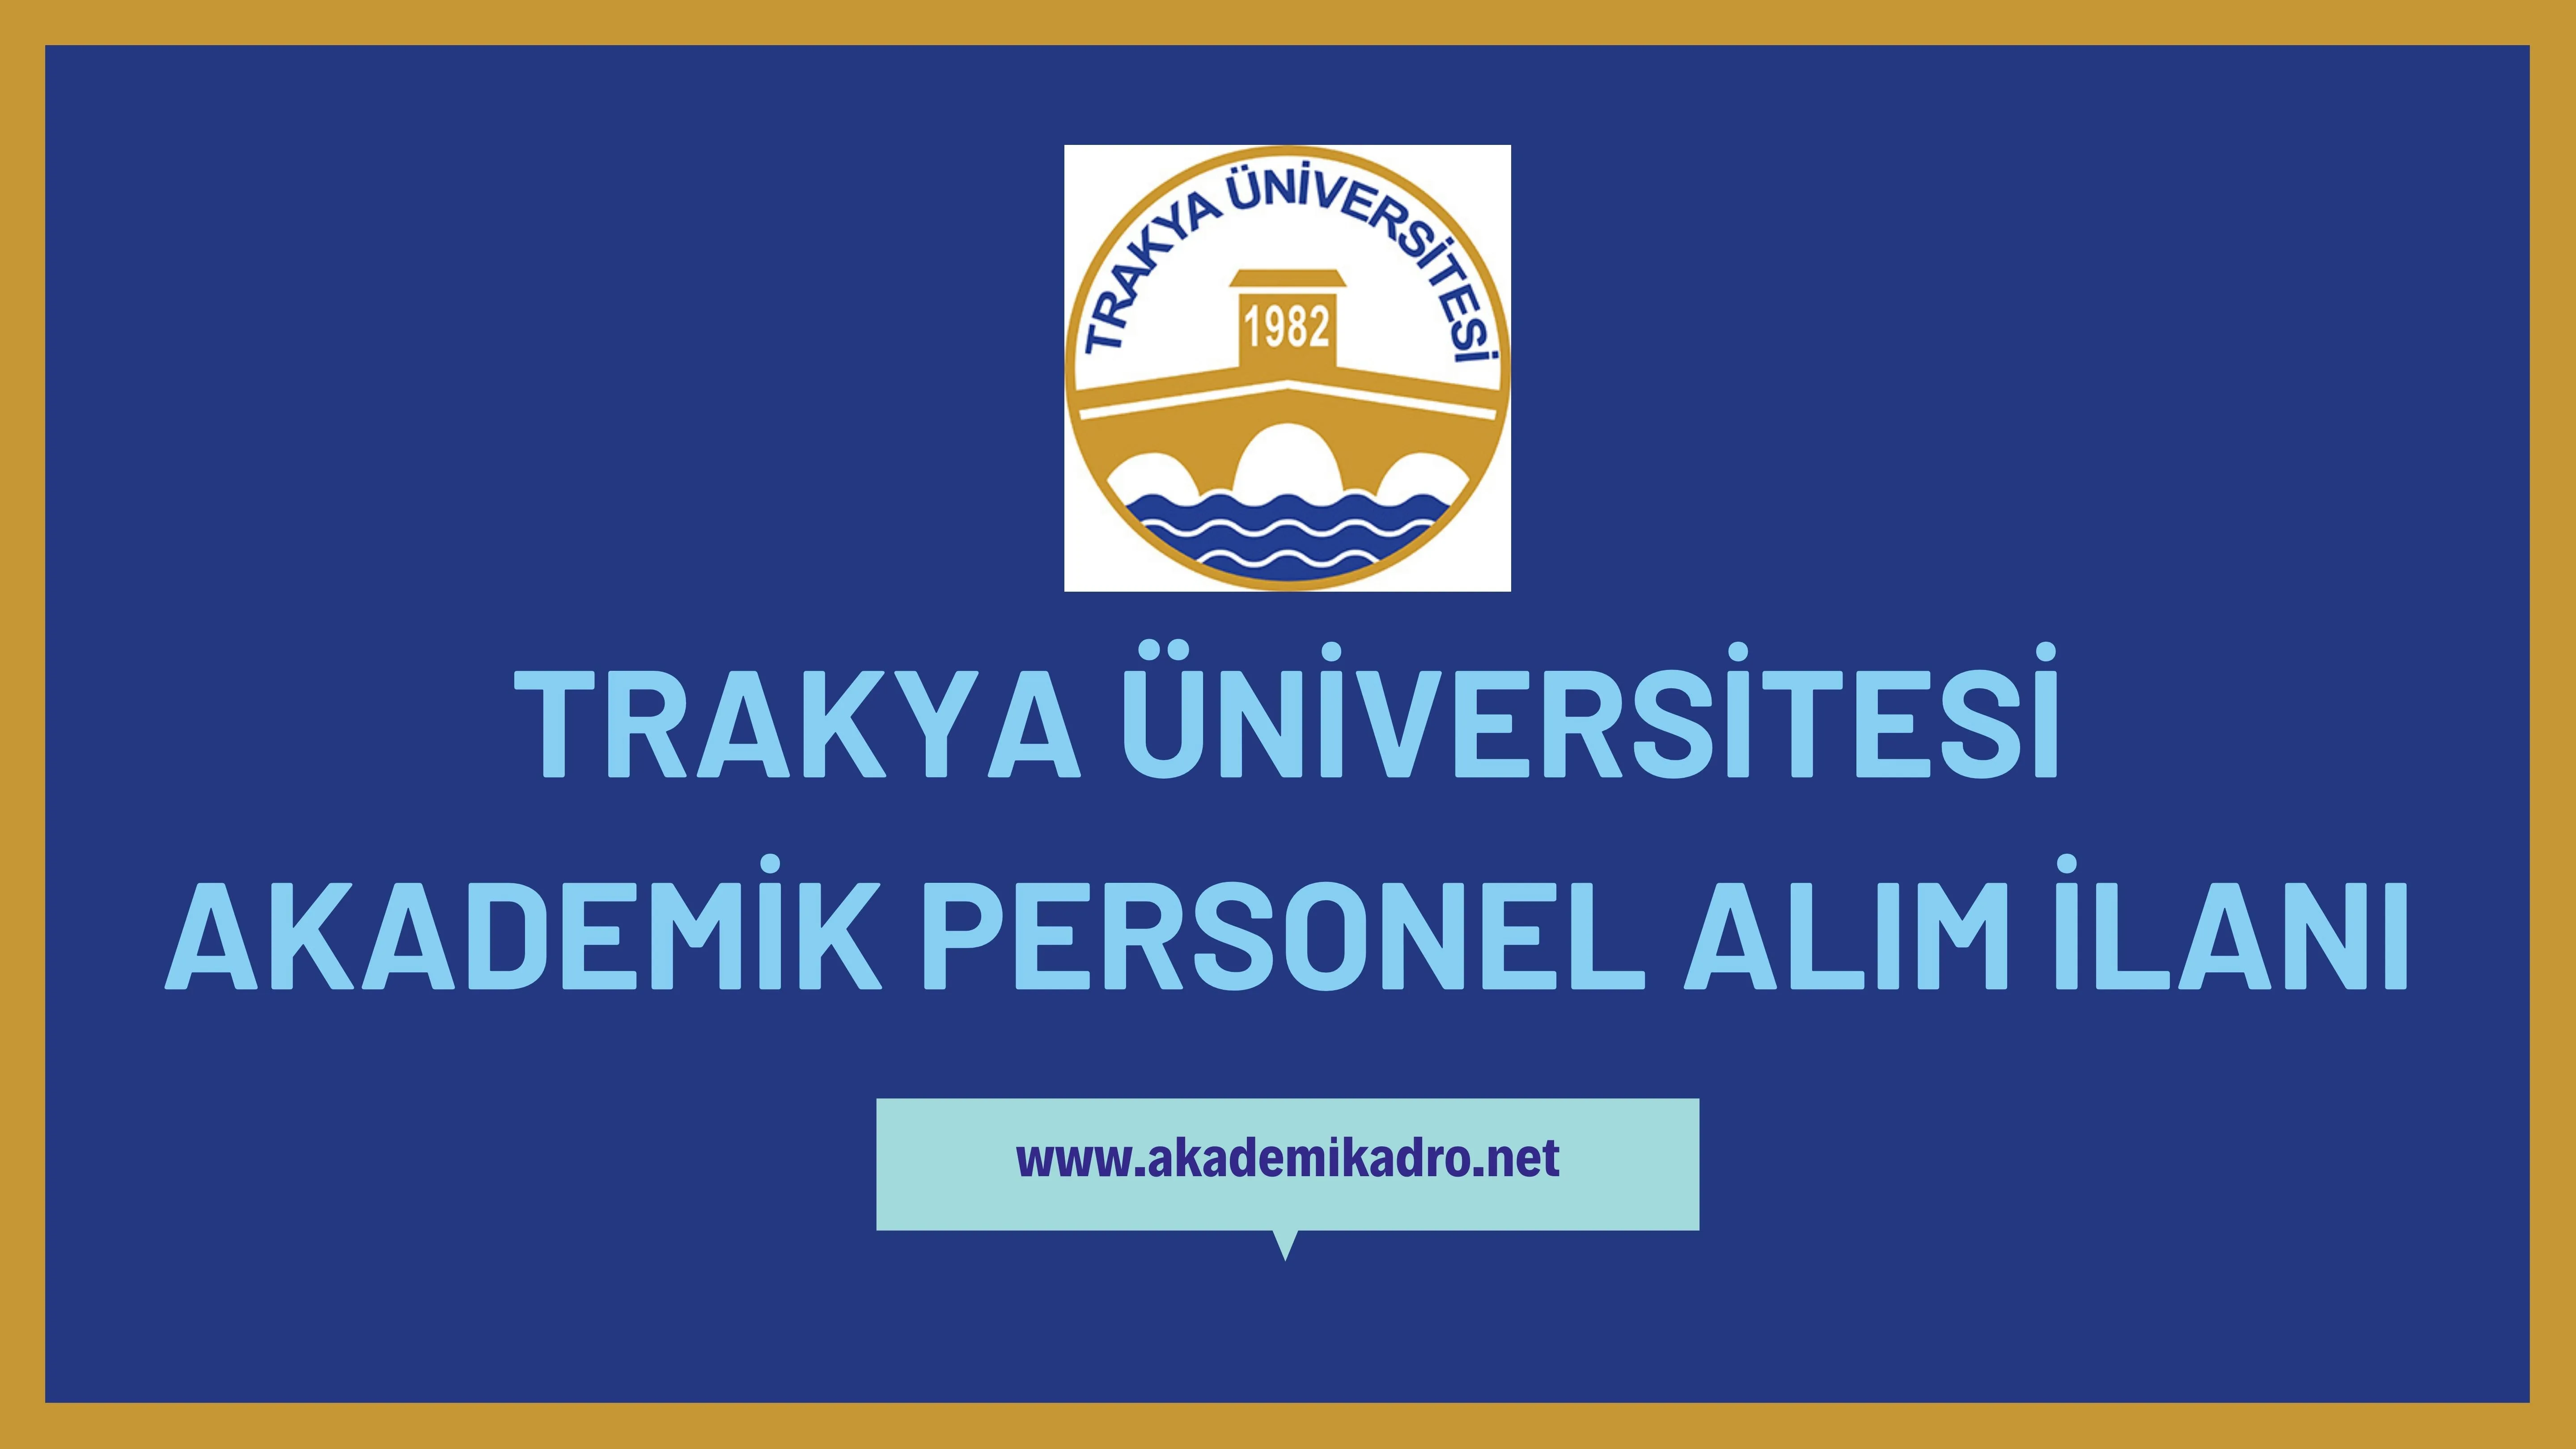 Trakya Üniversitesi birçok alandan 51 akademik personel alacak. Son başvuru tarihi 05 Ocak 2023.